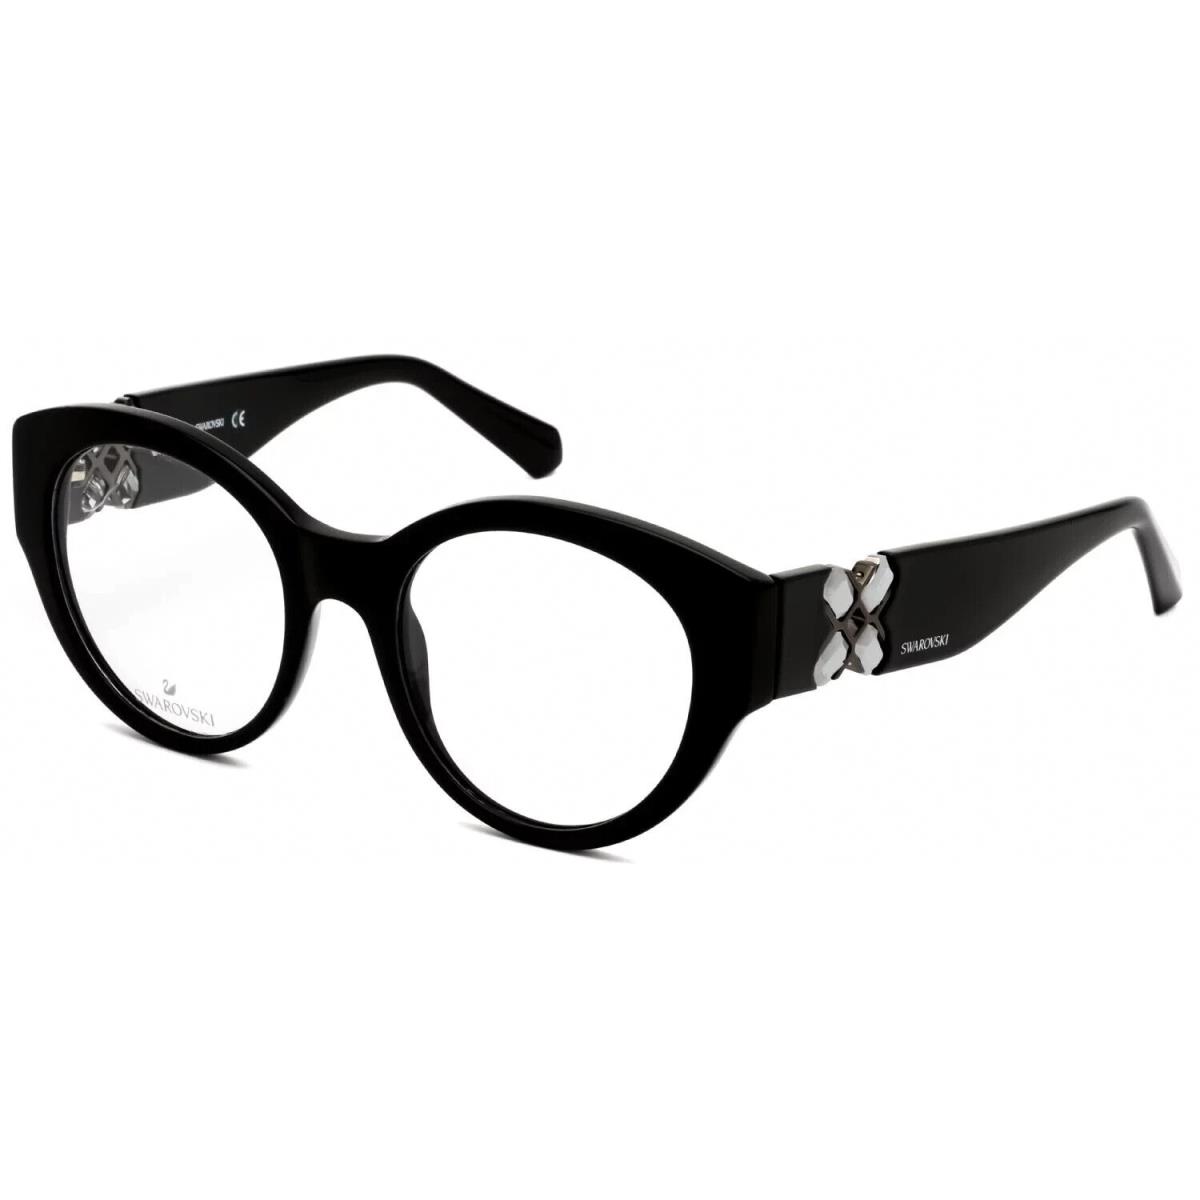 Swarovski SK5227 001 Round Shiny Black Eyeglasses